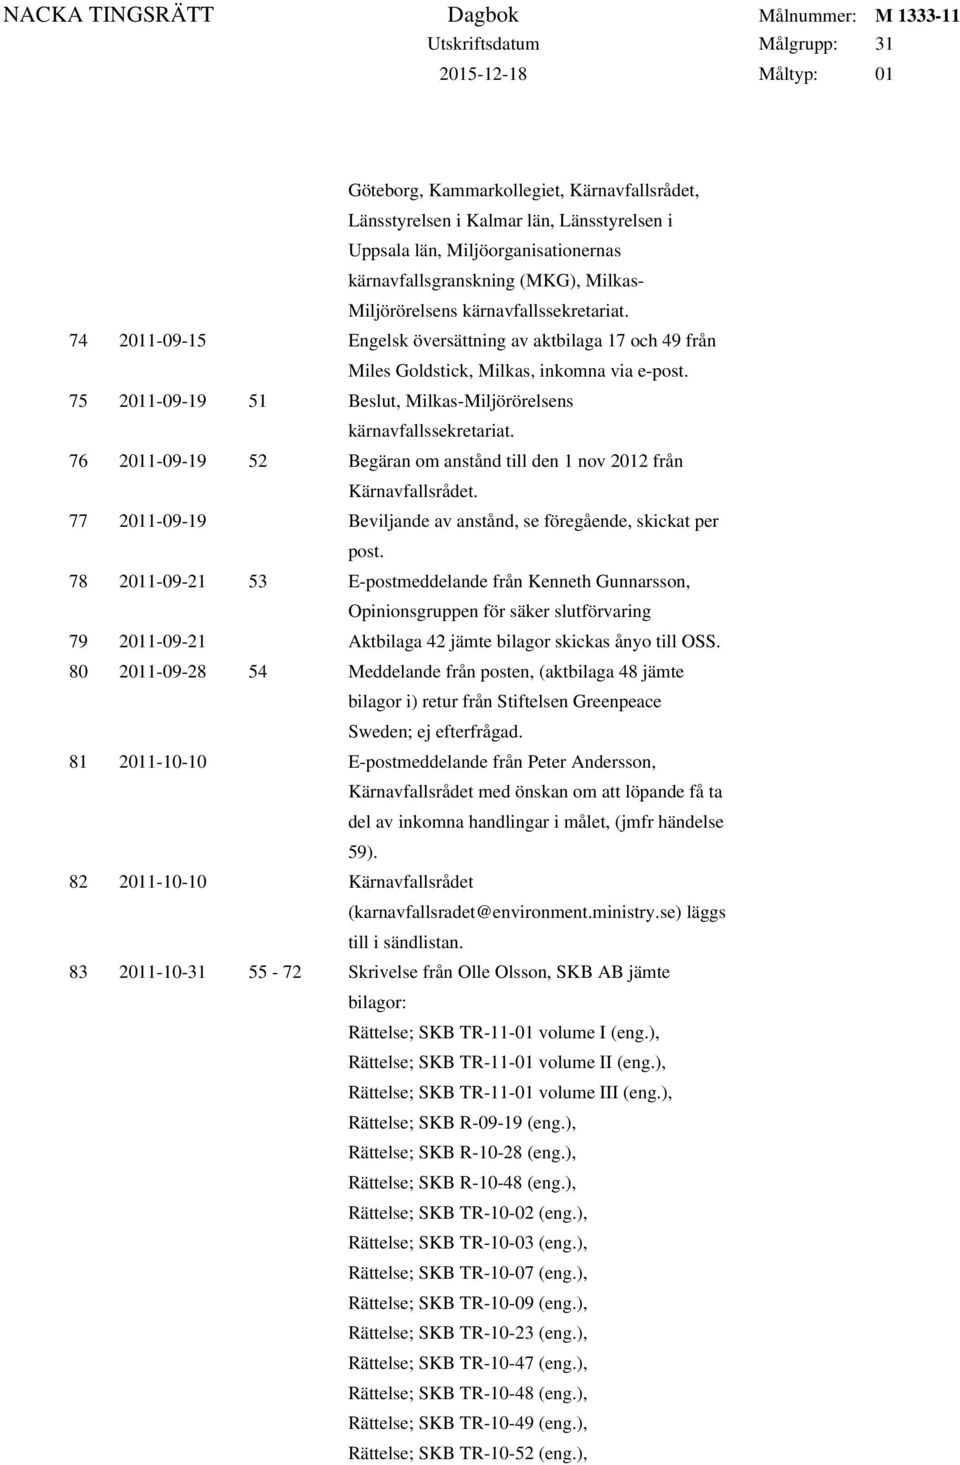 76 2011-09-19 52 Begäran om anstånd till den 1 nov 2012 från Kärnavfallsrådet. 77 2011-09-19 Beviljande av anstånd, se föregående, skickat per post.